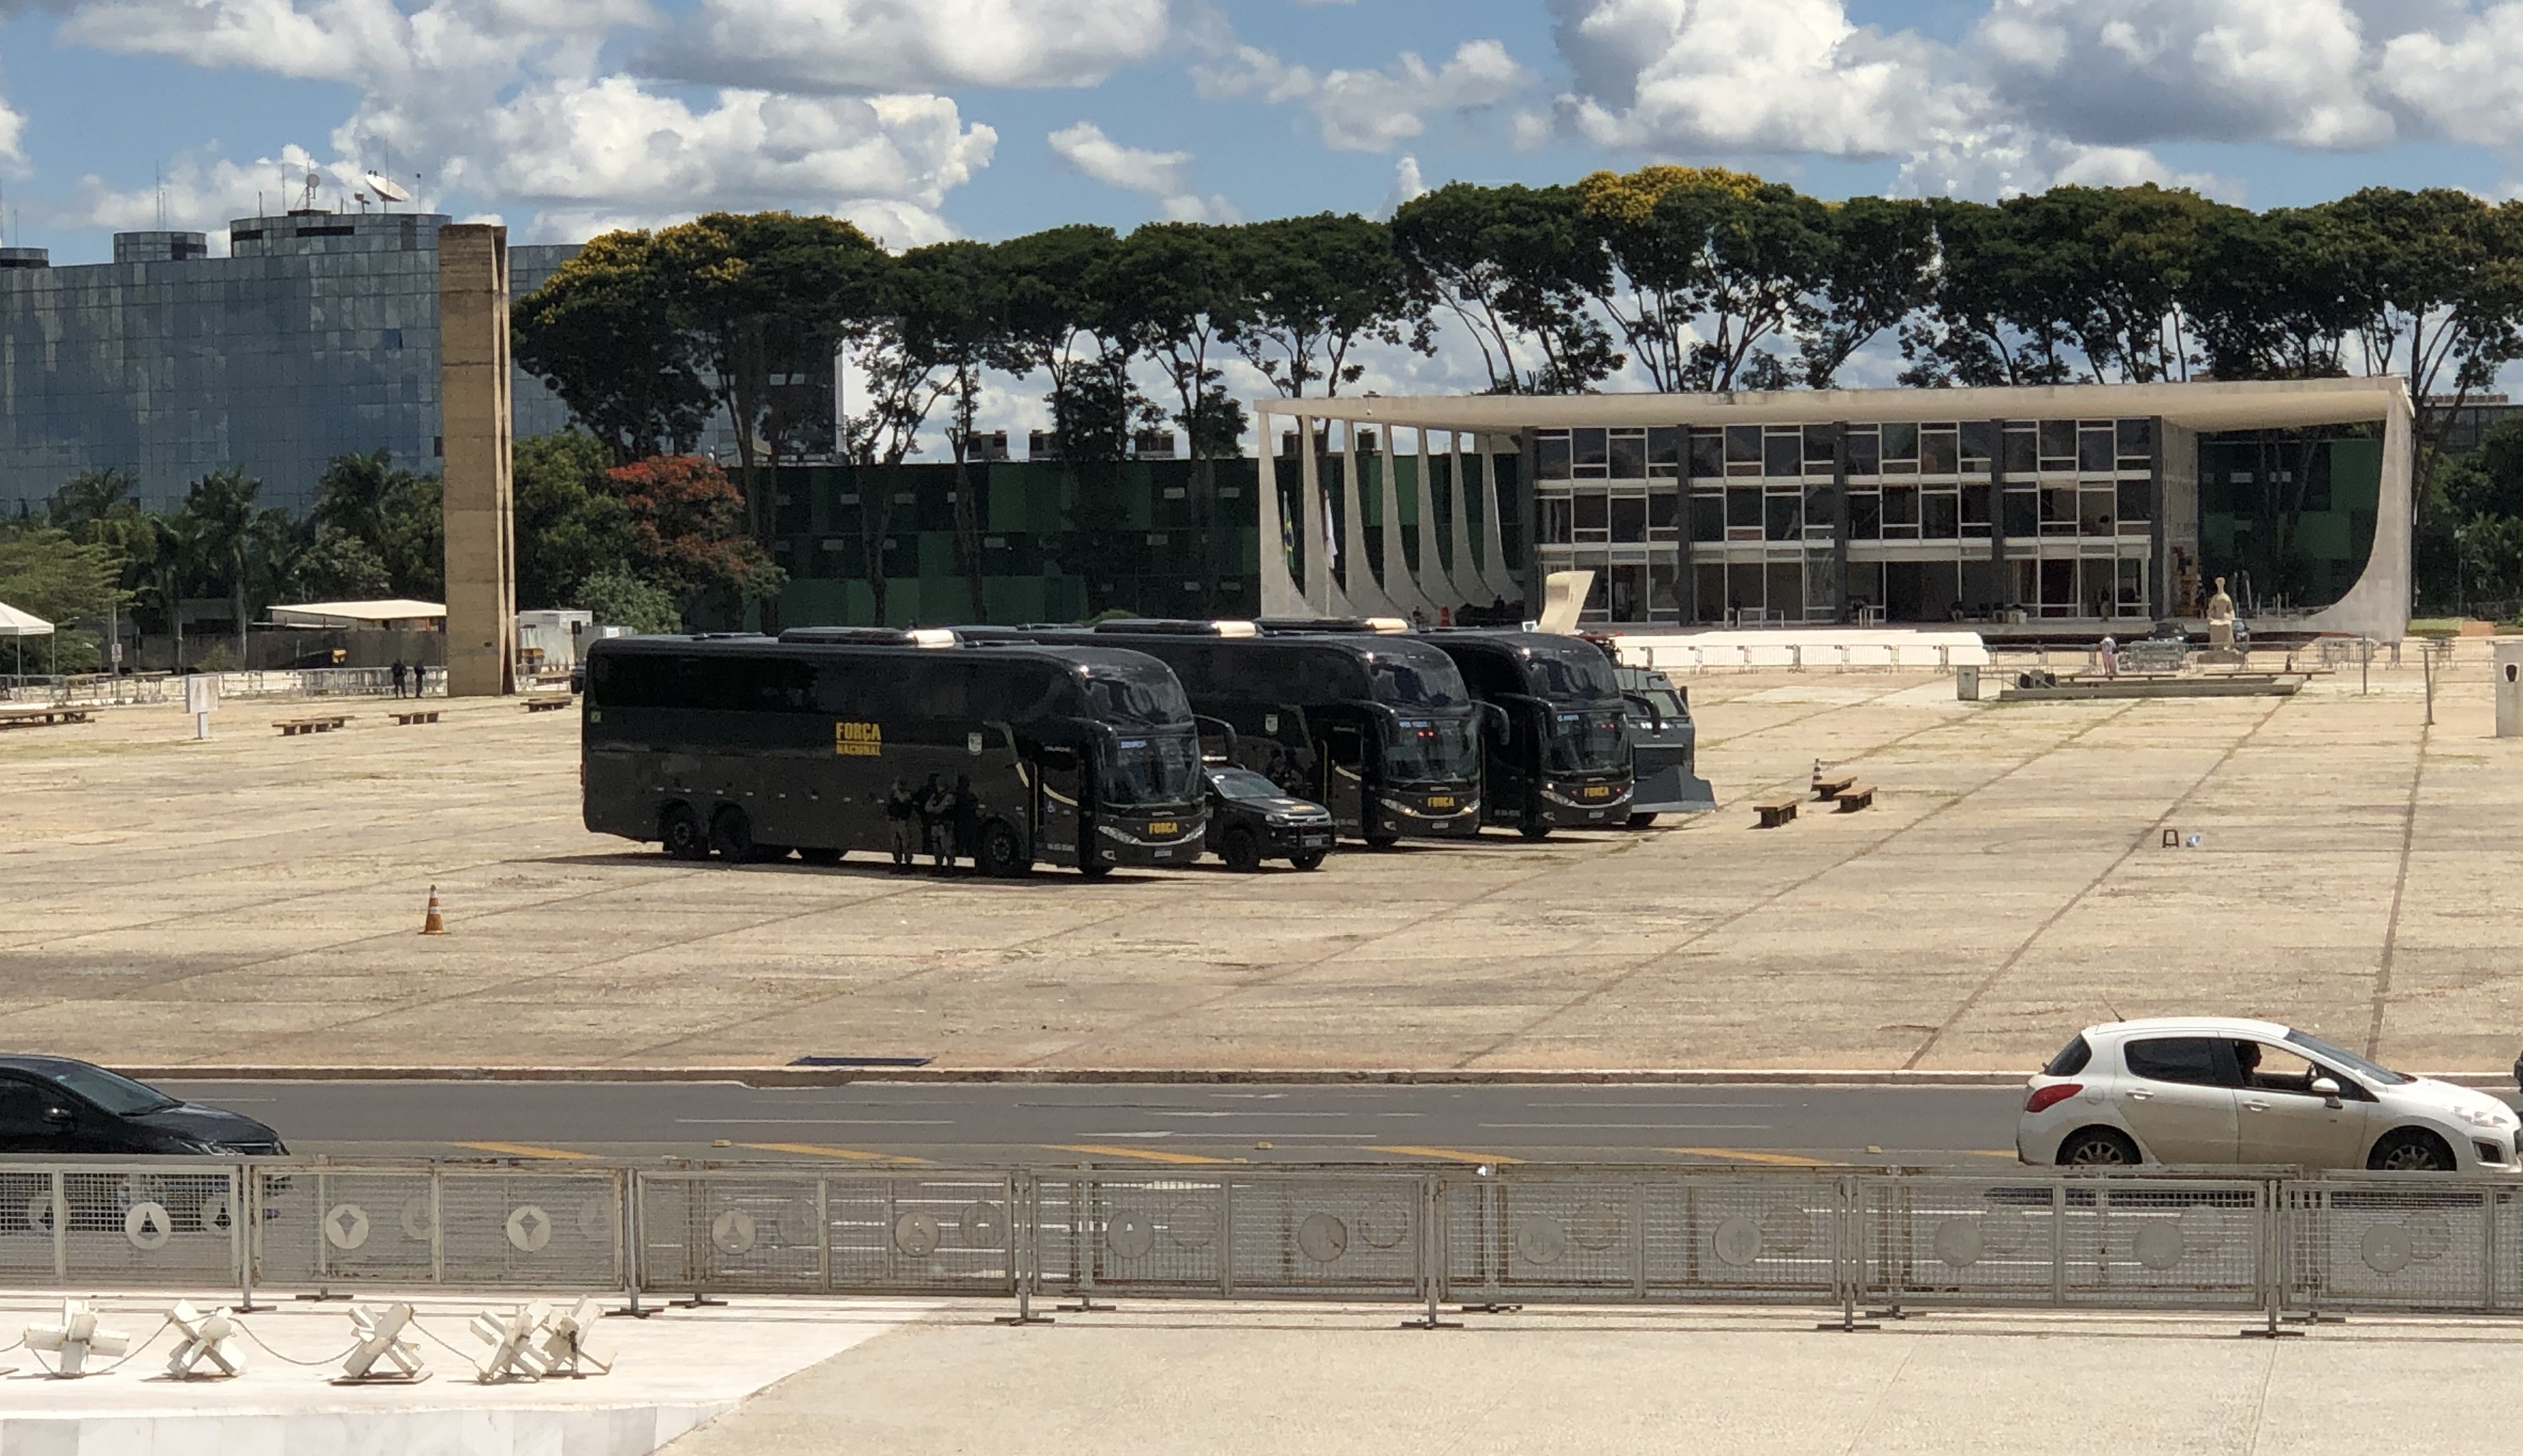 STF visto a partir do Salão Nobre do Palácio do Planalto em Brasília, presença da Força Nacional é vista ostensivamente